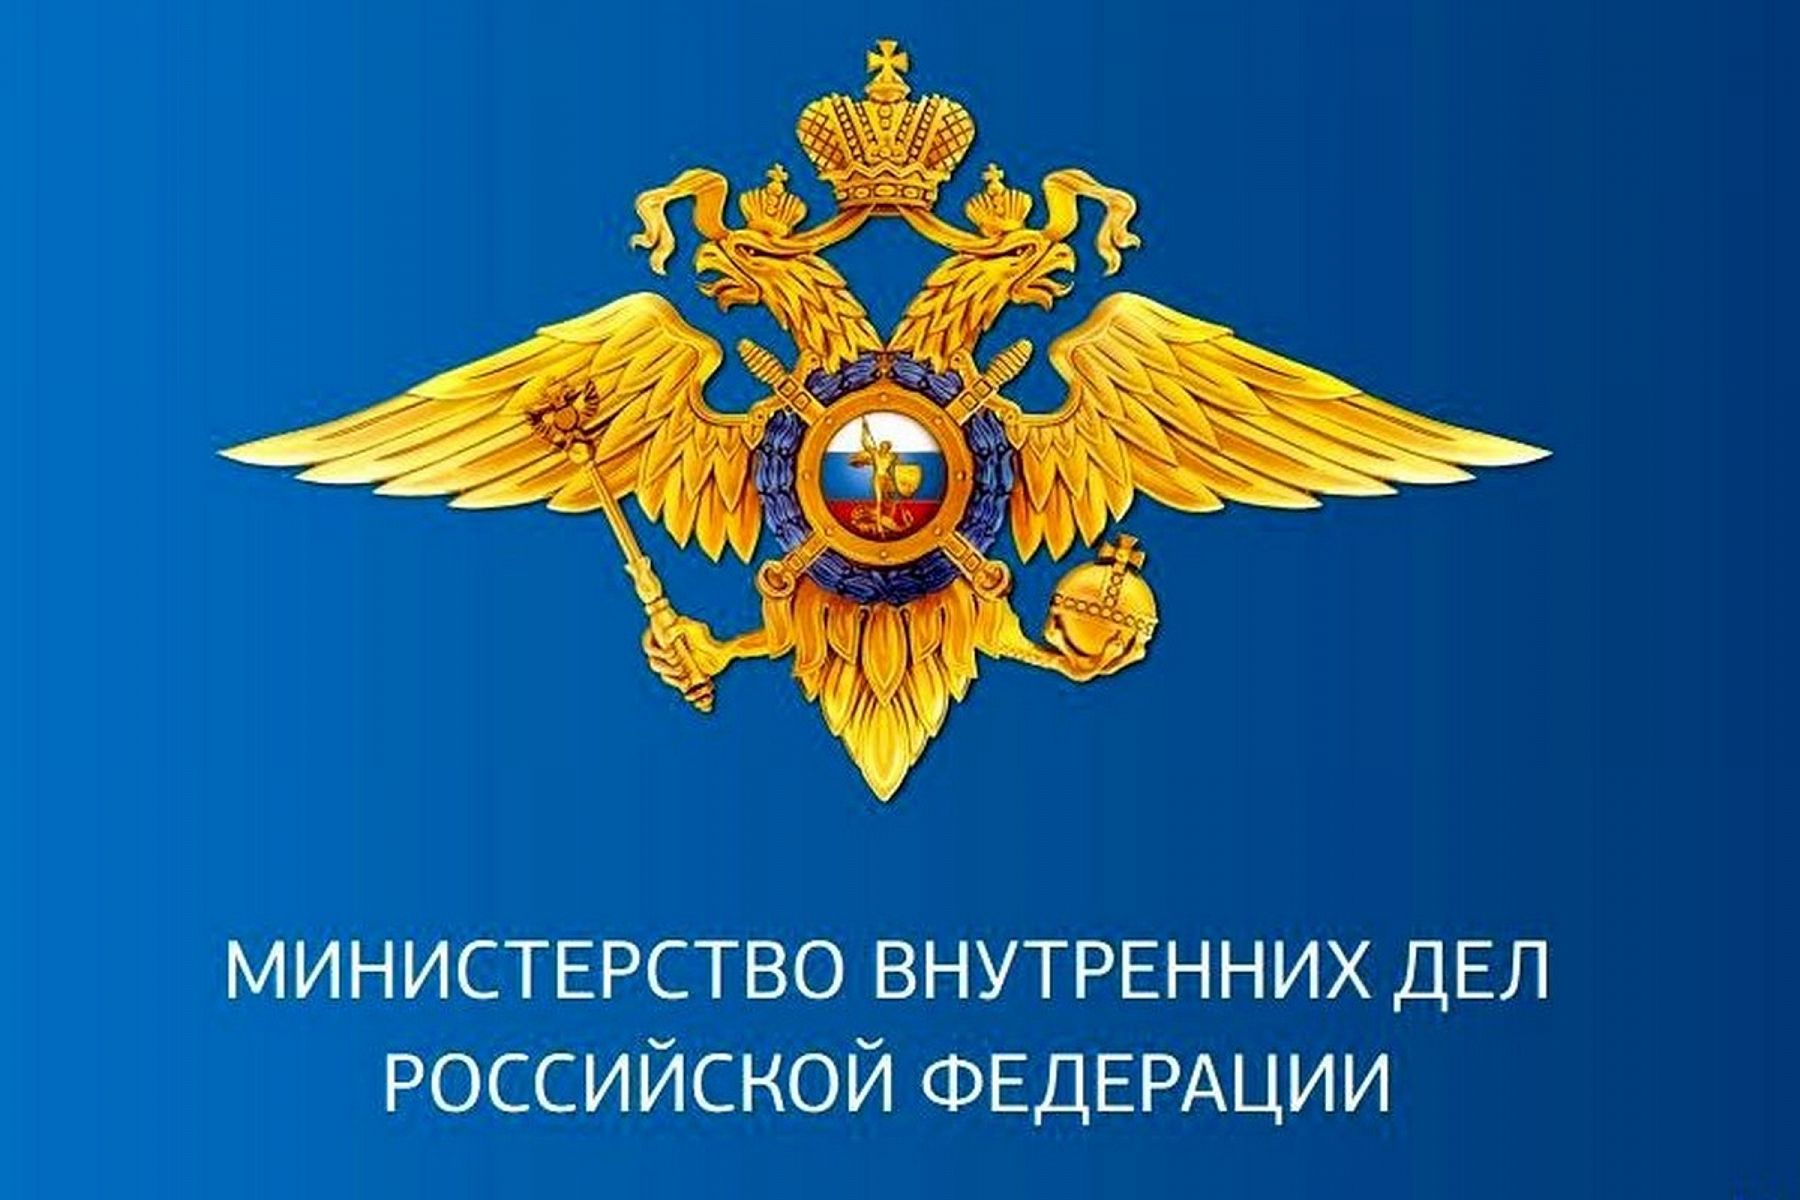 МВД России согласовало законопроекты об аресте и хранении конфискованных криптовалют